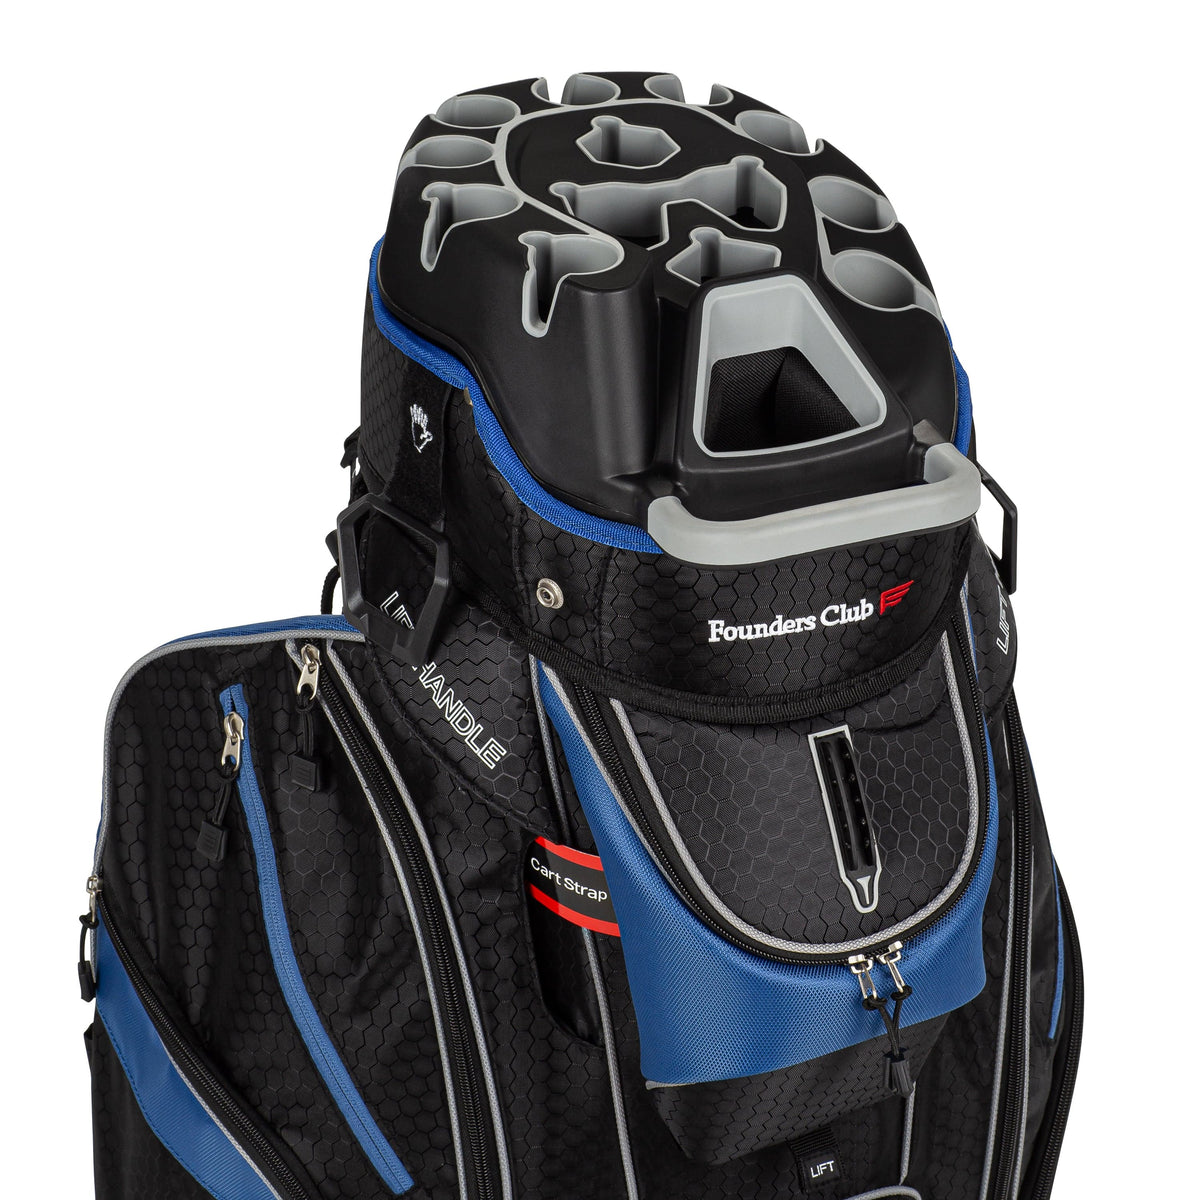 Founders Club Premium Organizer 14 Way Golf Cart Bag - Blue